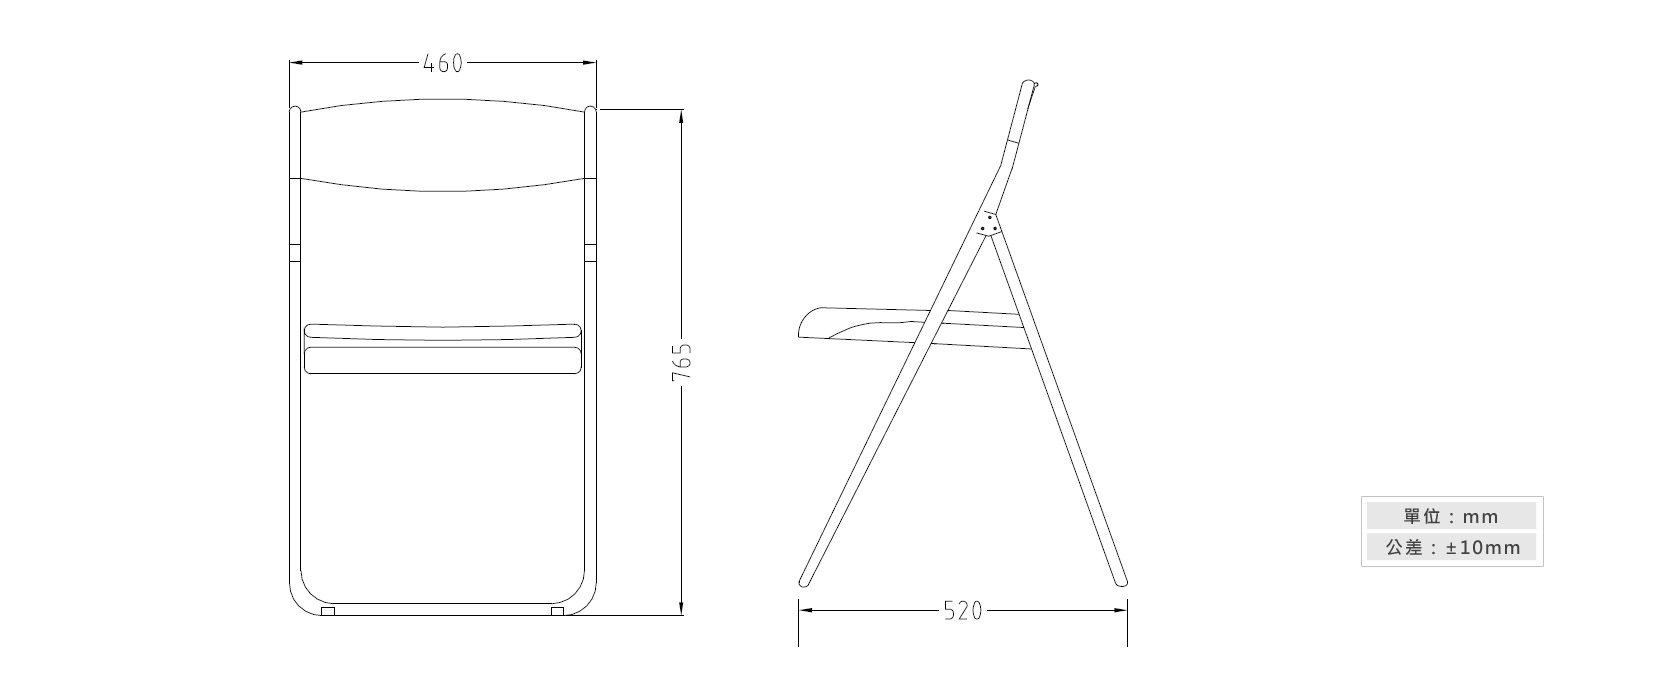 2-27 塑鋼摺合椅材質說明